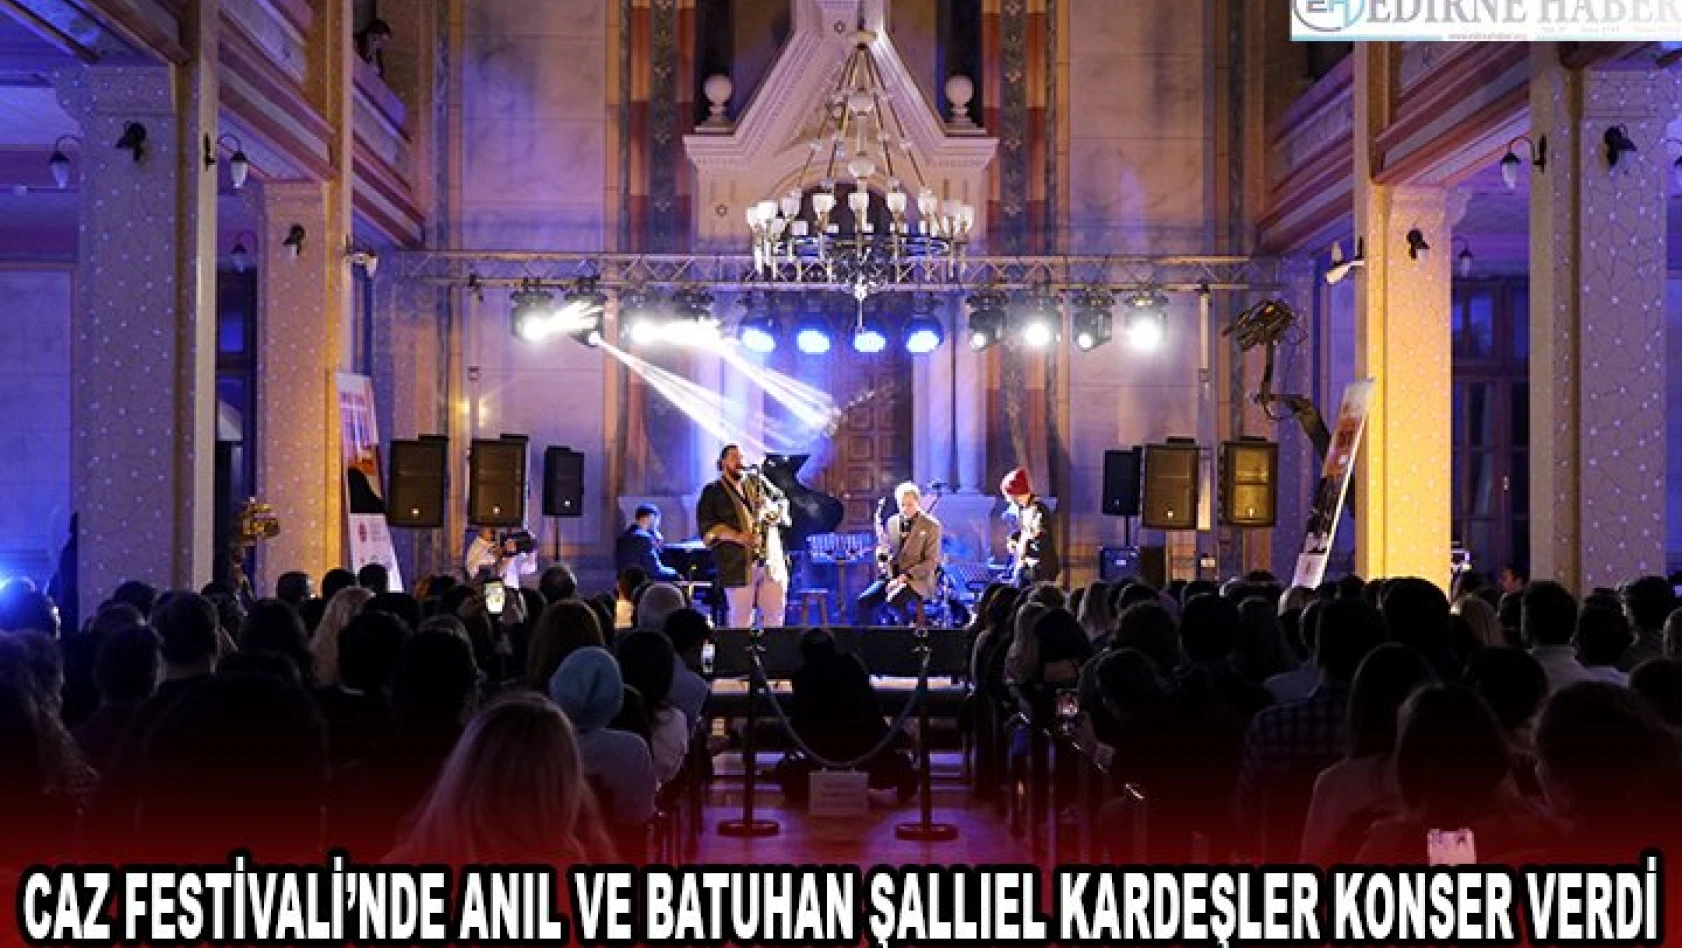 Caz Festivali'nde Anıl ve Batuhan Şallıel kardeşler konser verdi